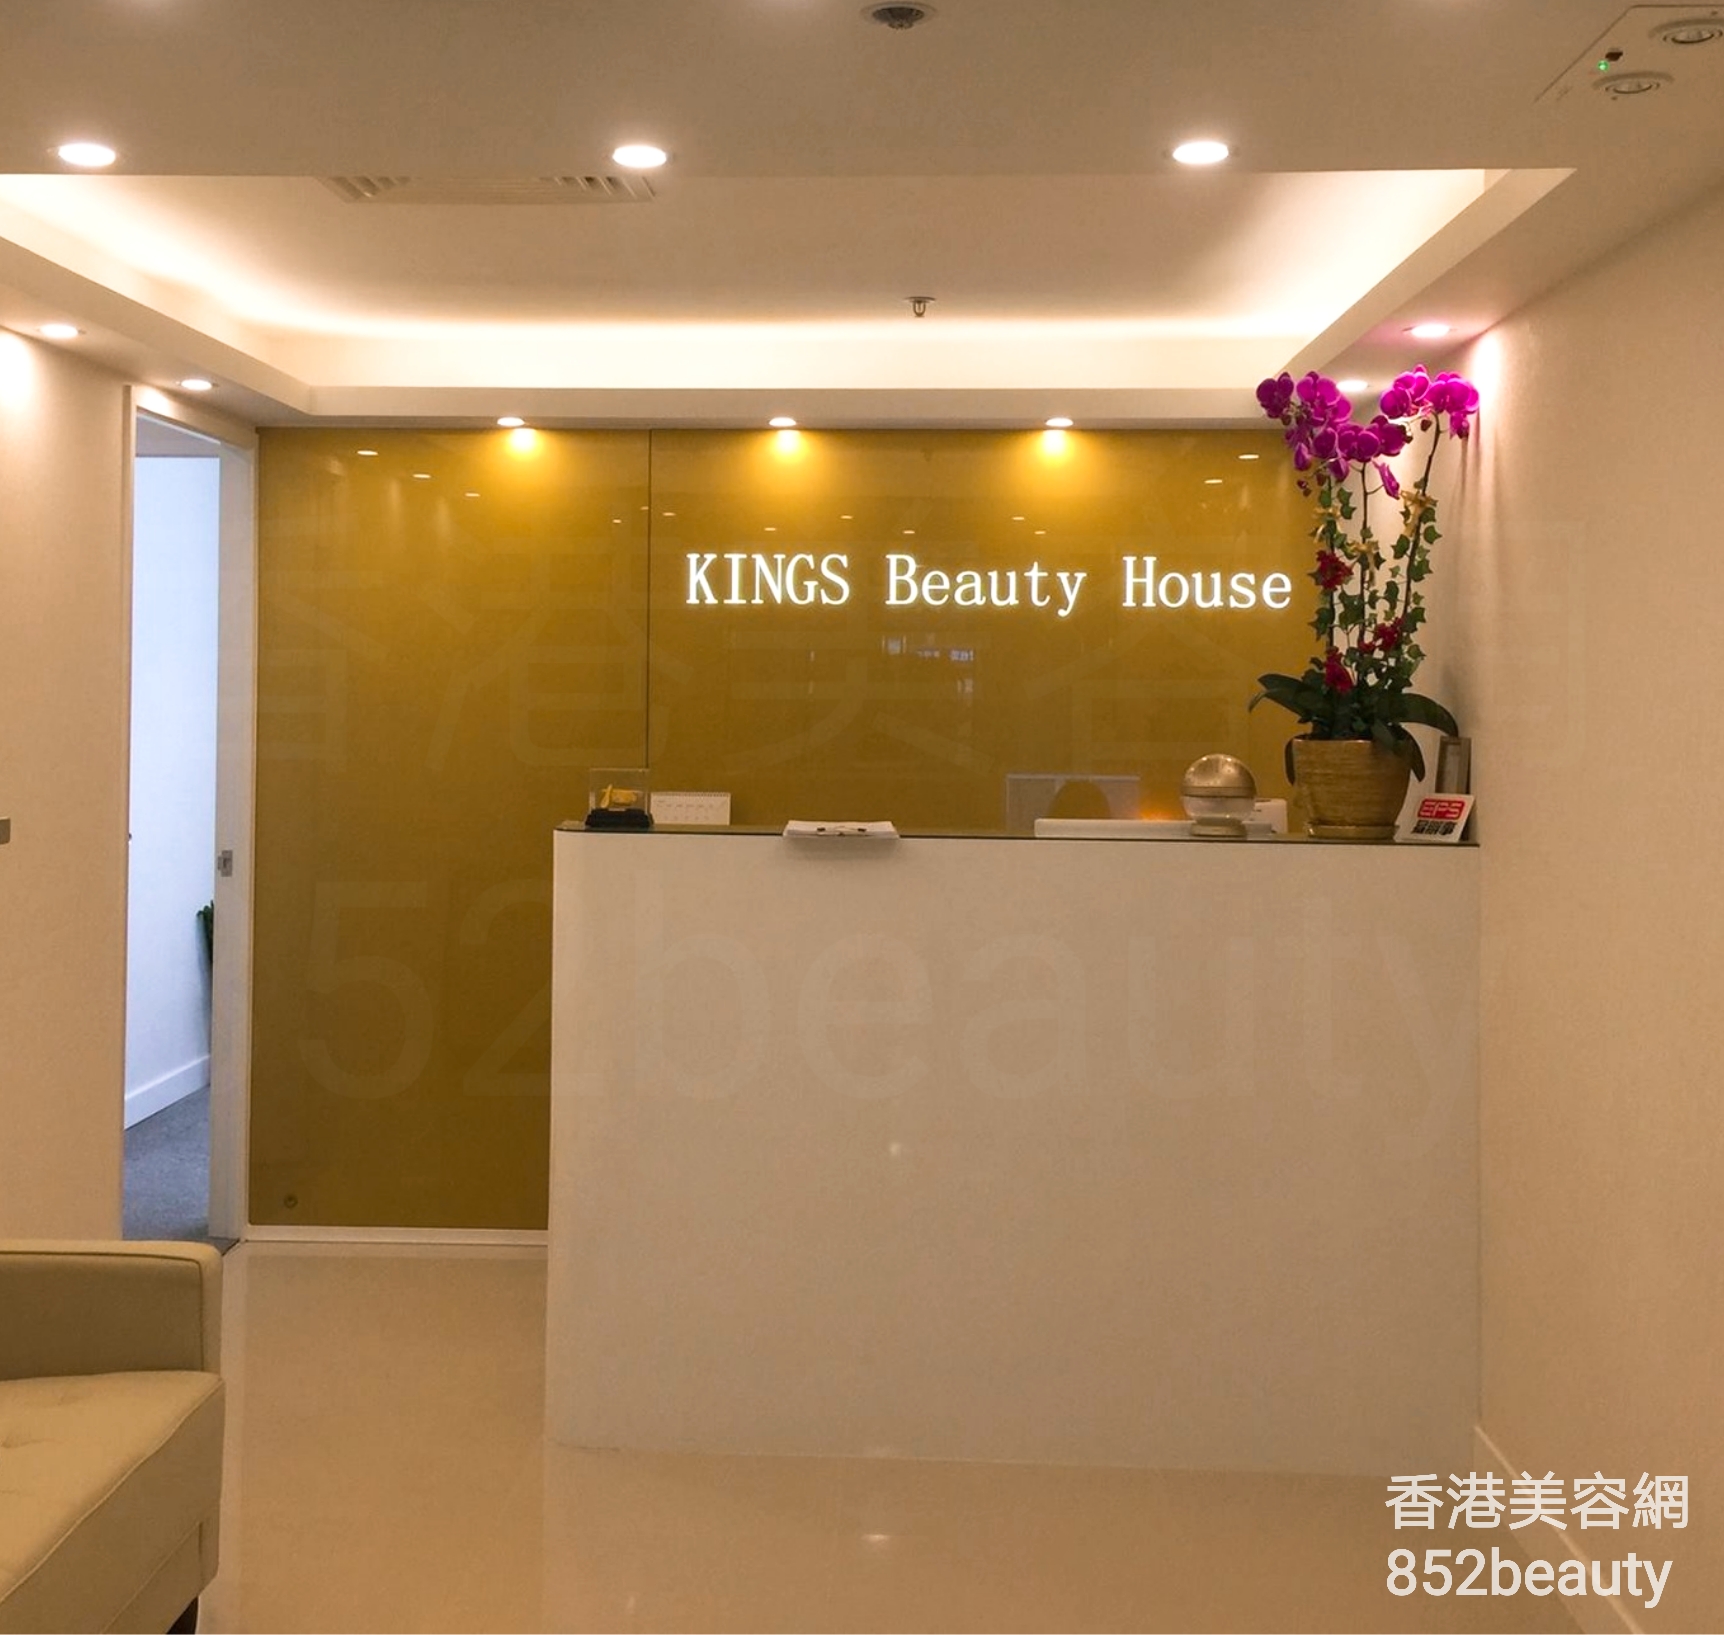 修眉/眼睫毛: KINGS Beauty House (雅蘭中心 本店)